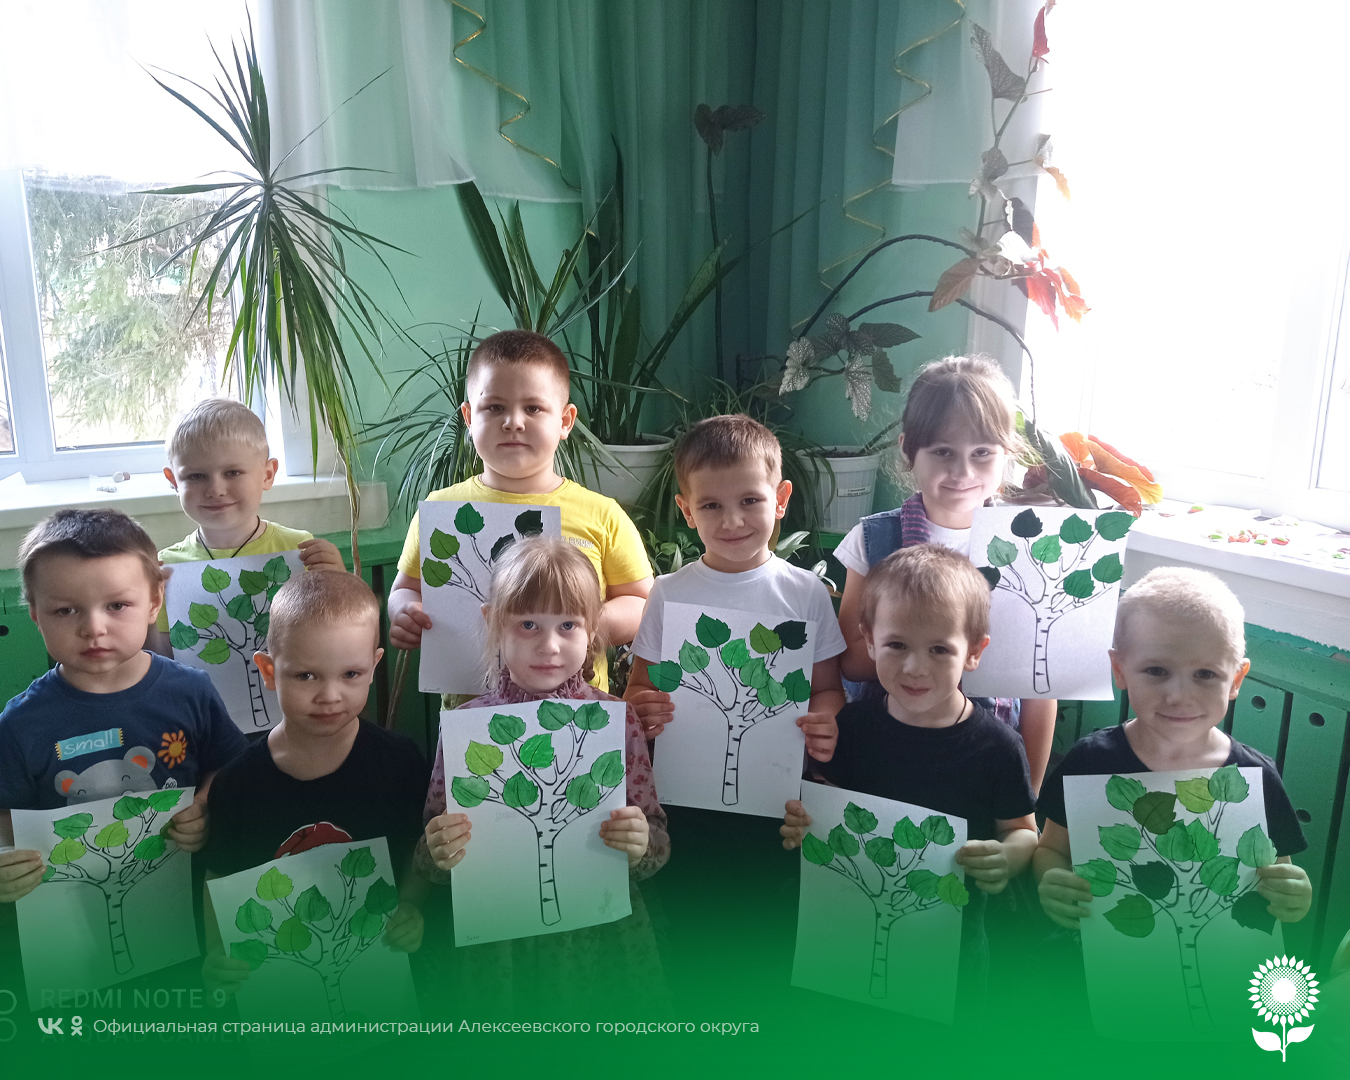 В детских садах Алексеевского городского округа прошли мероприятия, посвященные Международному Дню леса